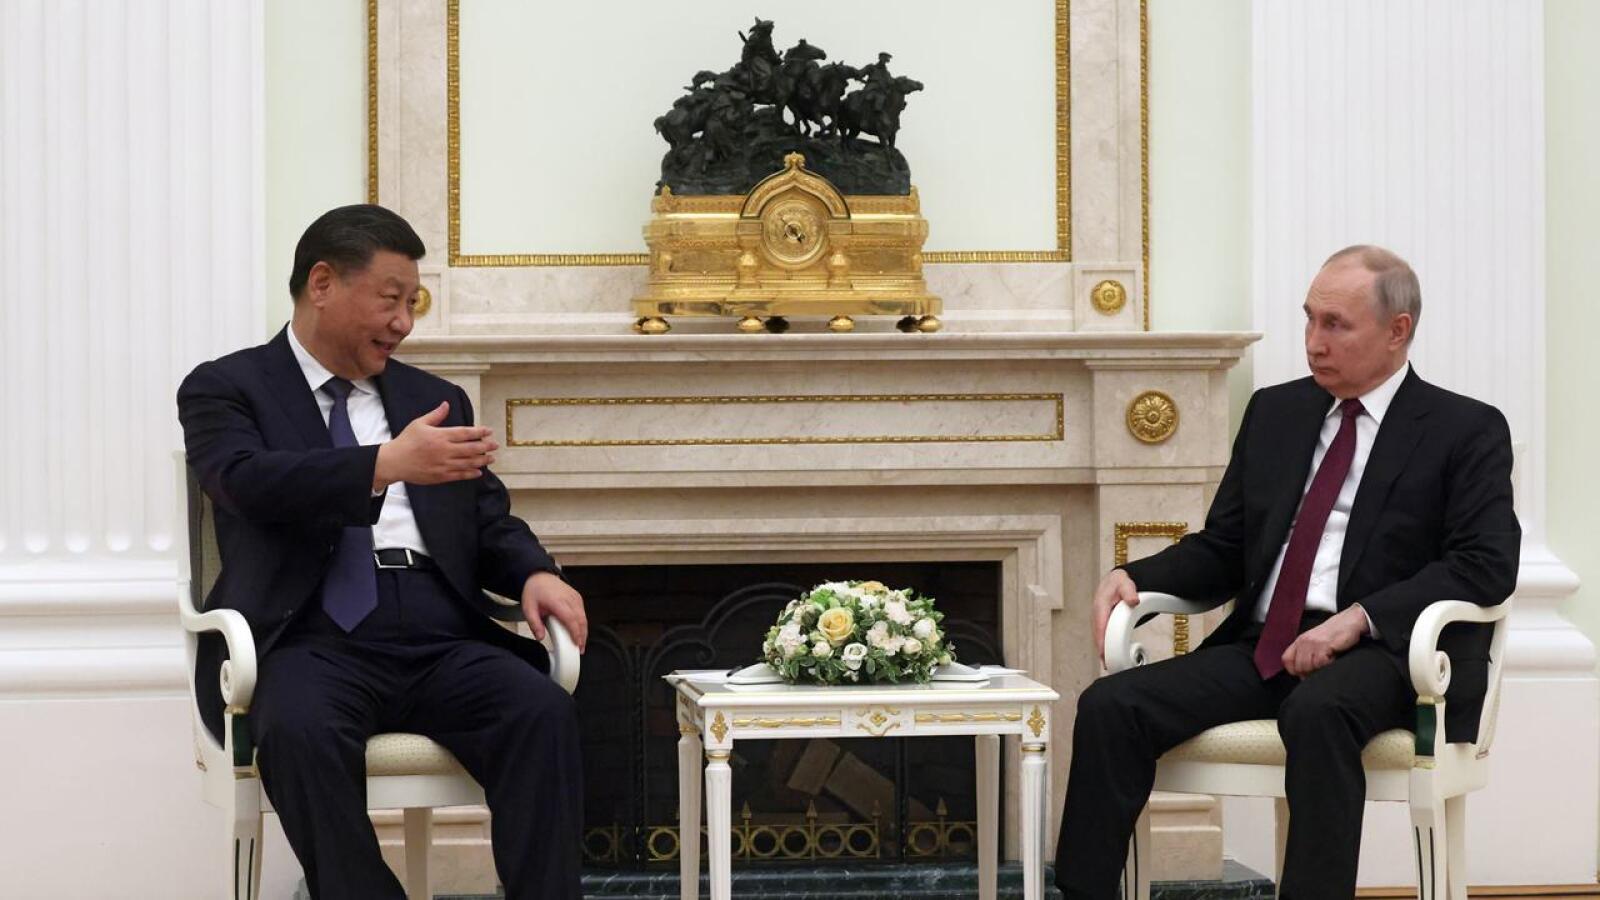 Kiinan presidentti Xi Jinping aloitti maanantaina kolmipäiväisen vierailunsa Moskovassa. Venäjän presidentti Vladimir Putin toimii isäntänä.